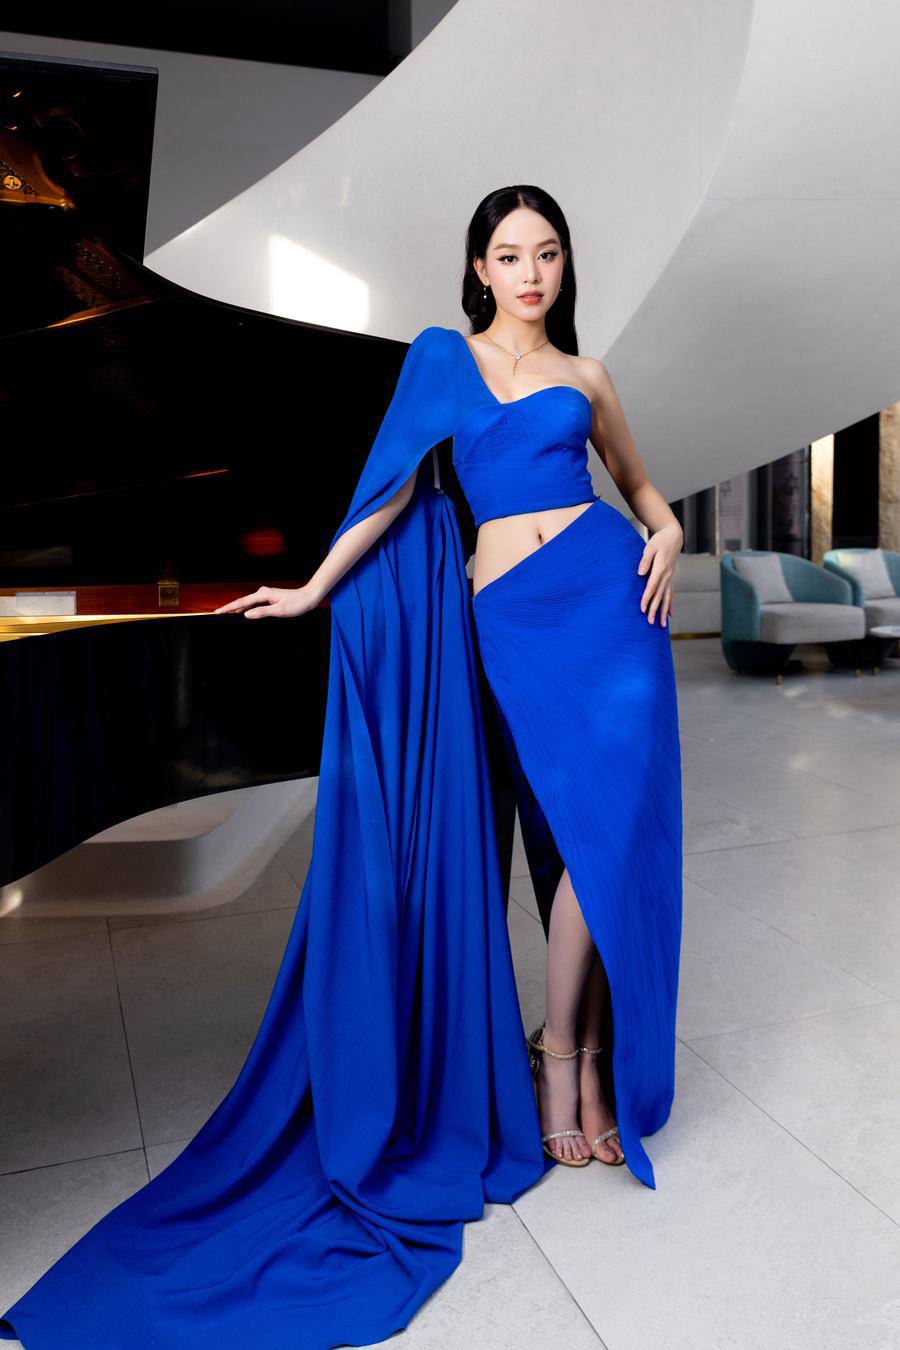 Hoa hậu Thanh Thủy ngày càng nhuận sắc, thời trang thảm đỏ gây mê - 3